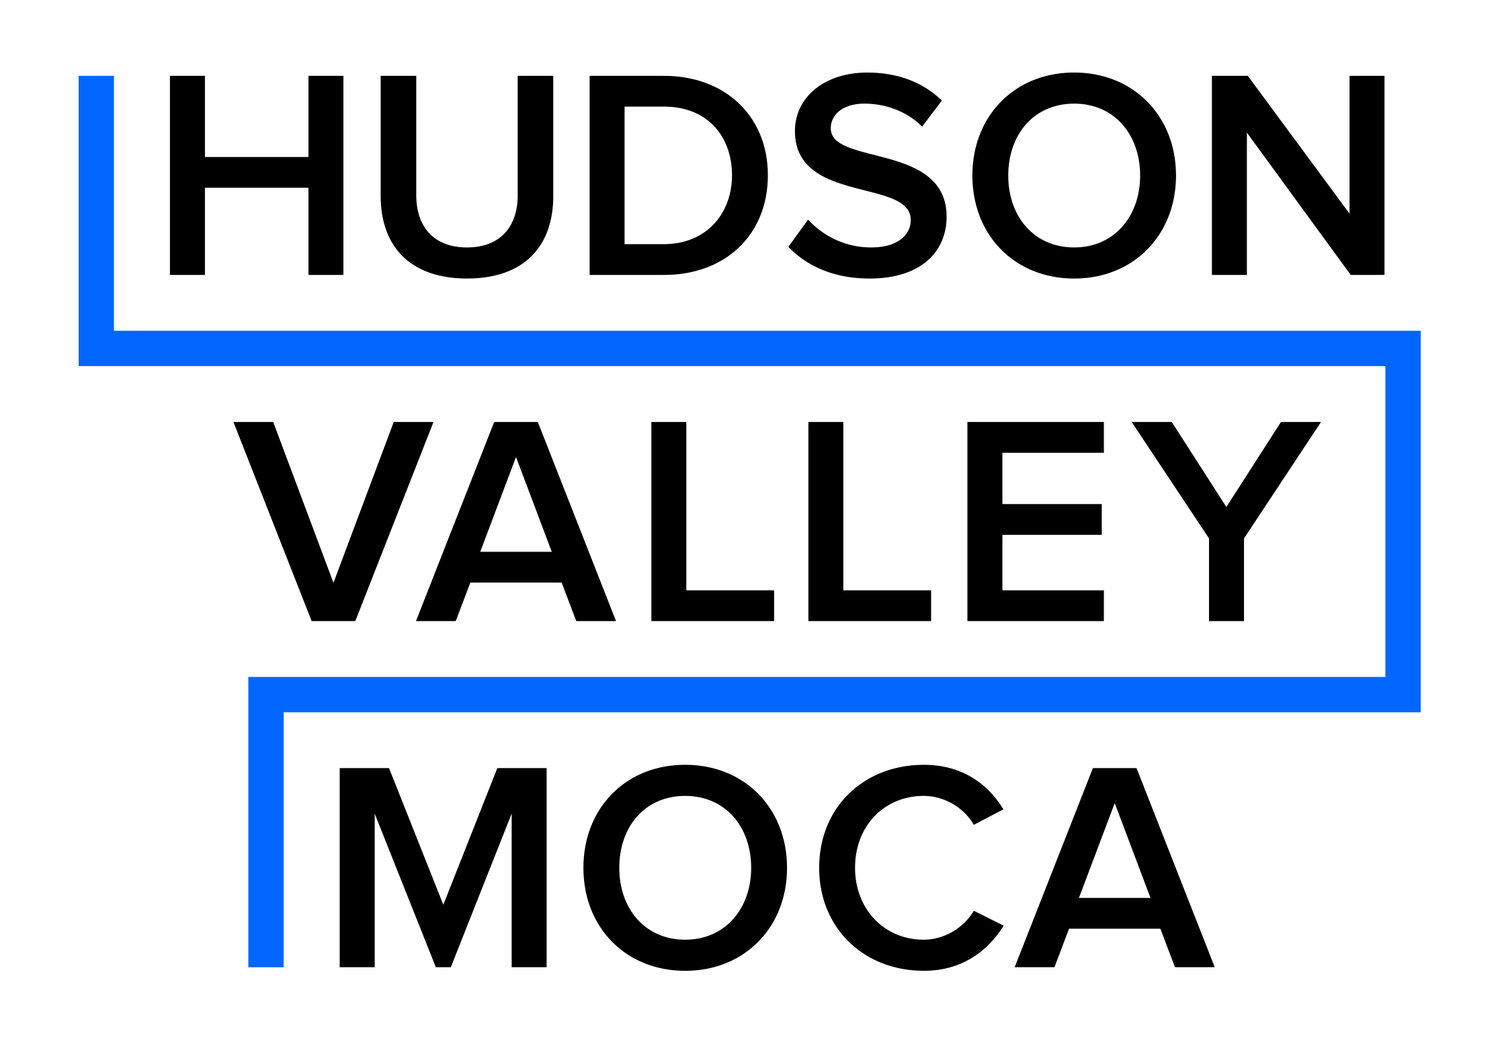 HUDSON VALLEY MOCA